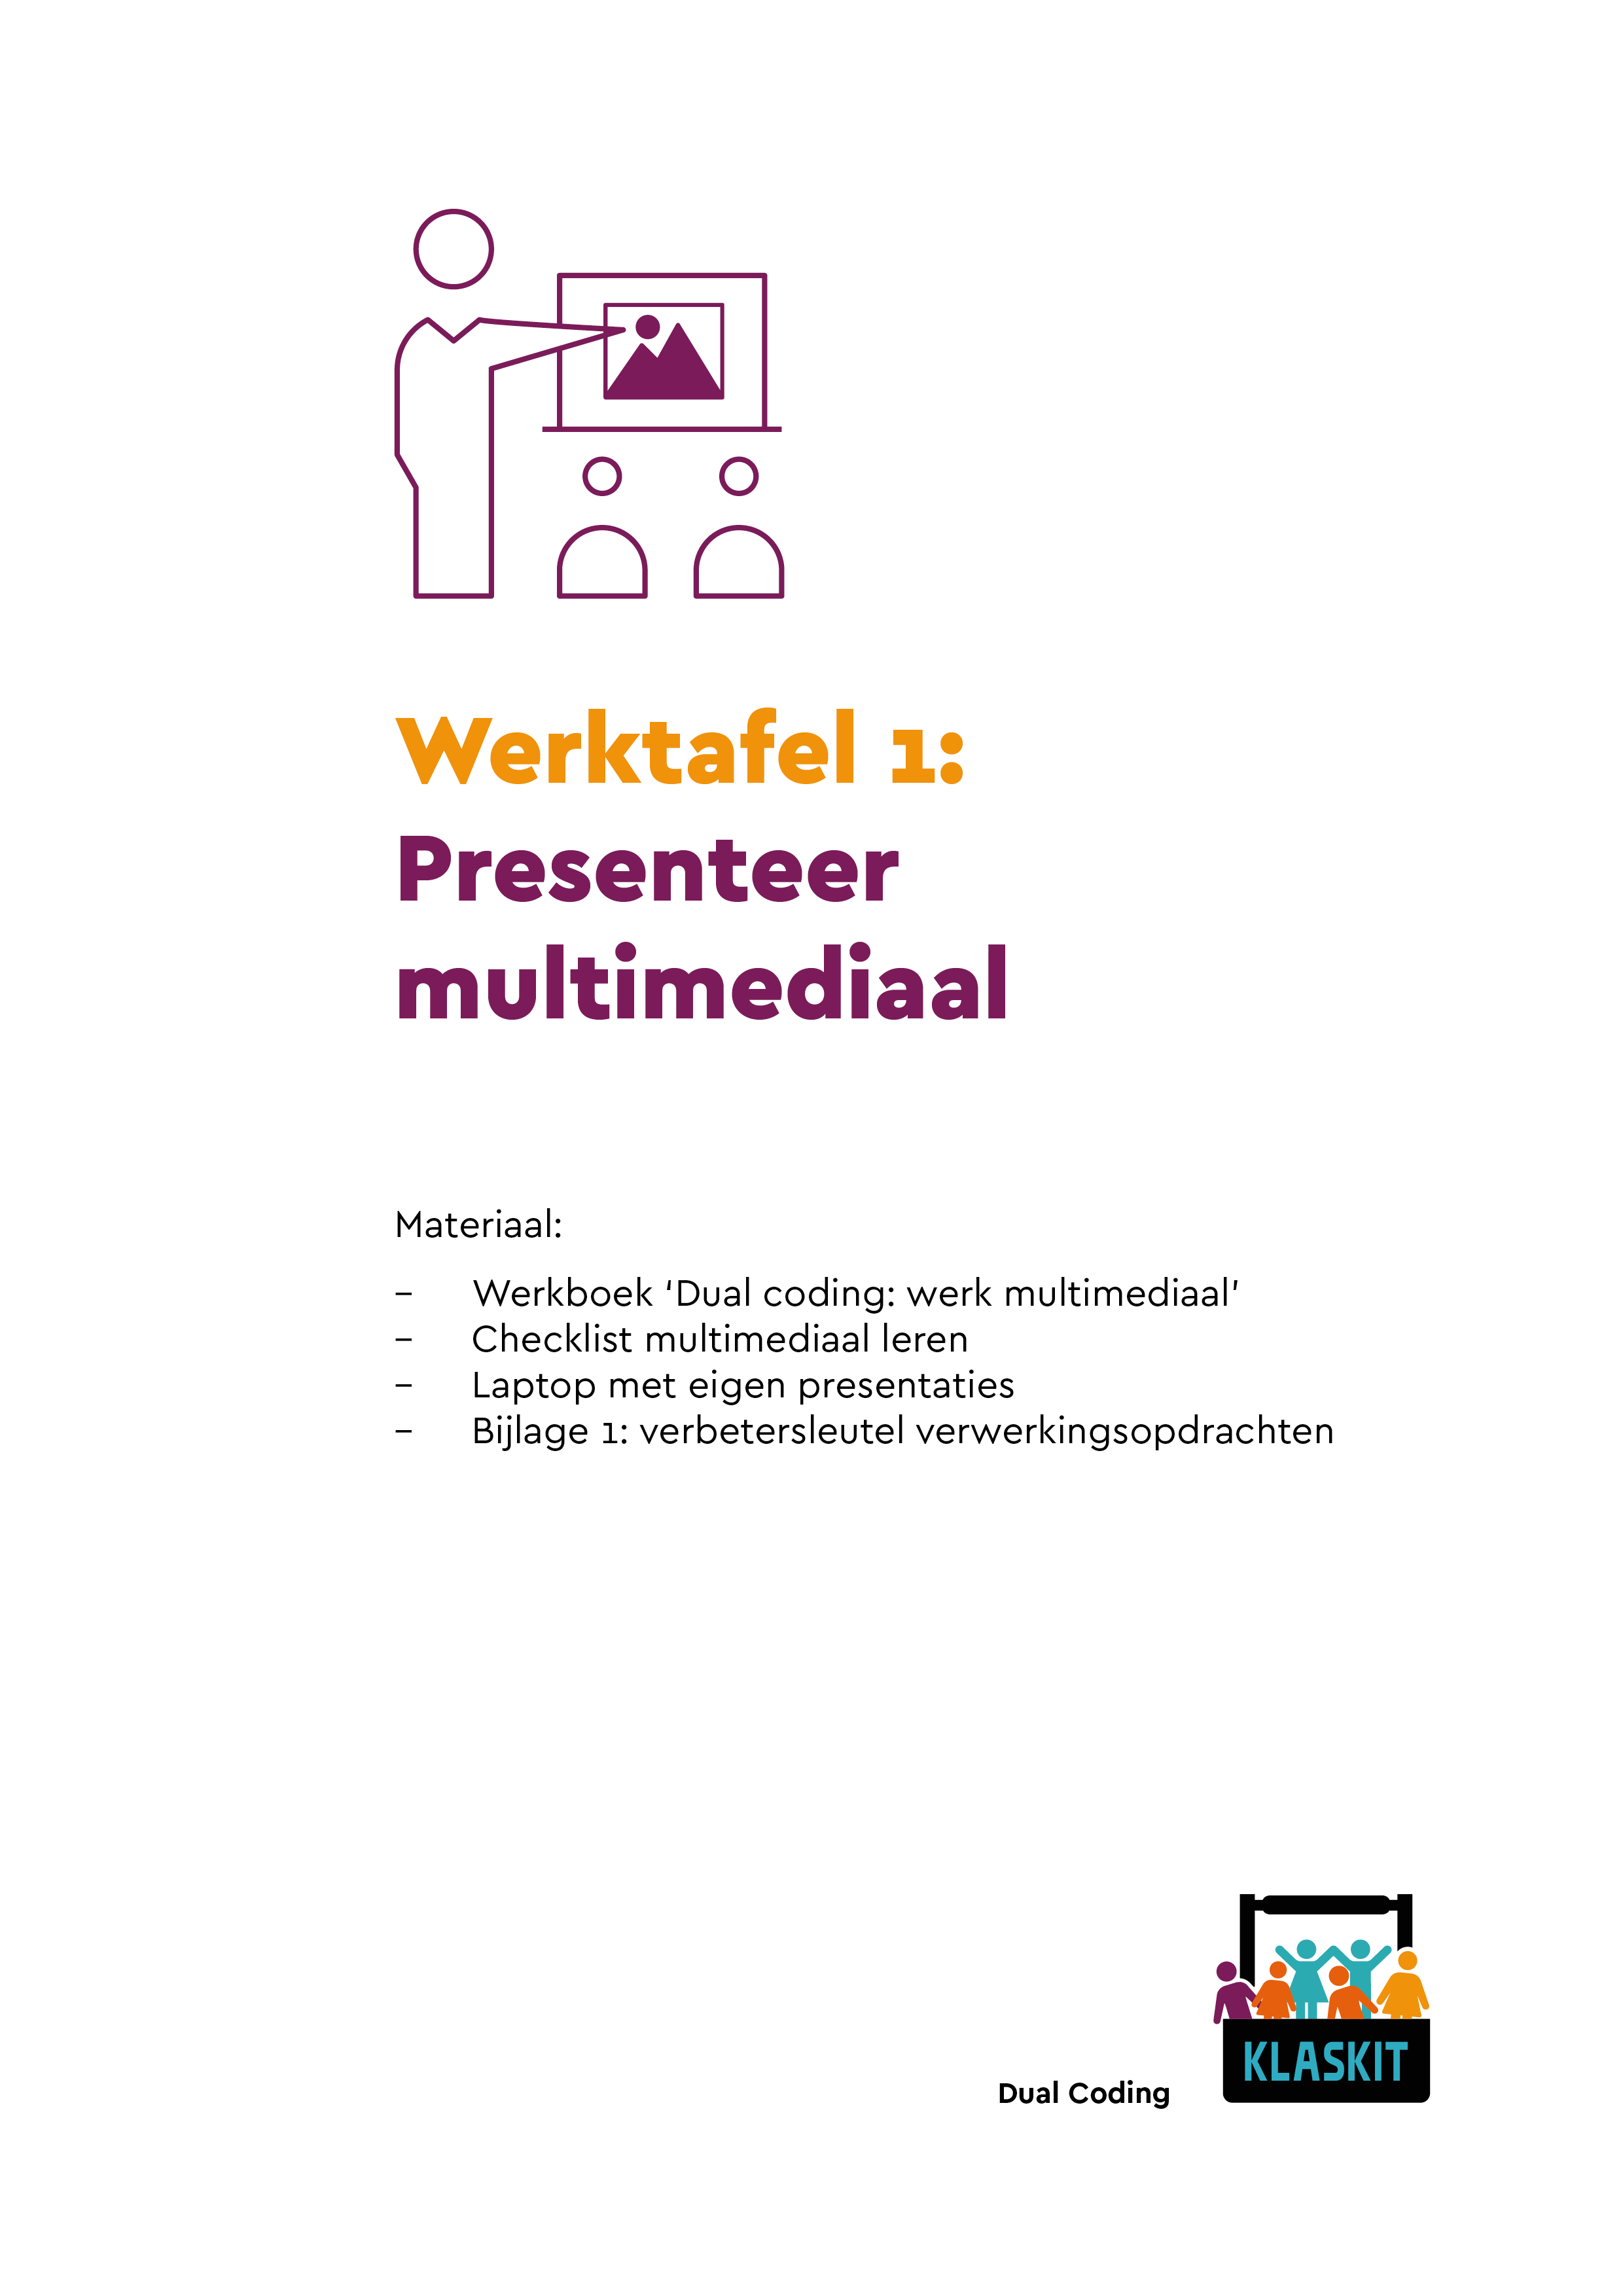 Werktafel 1 – presenteer multimediaal